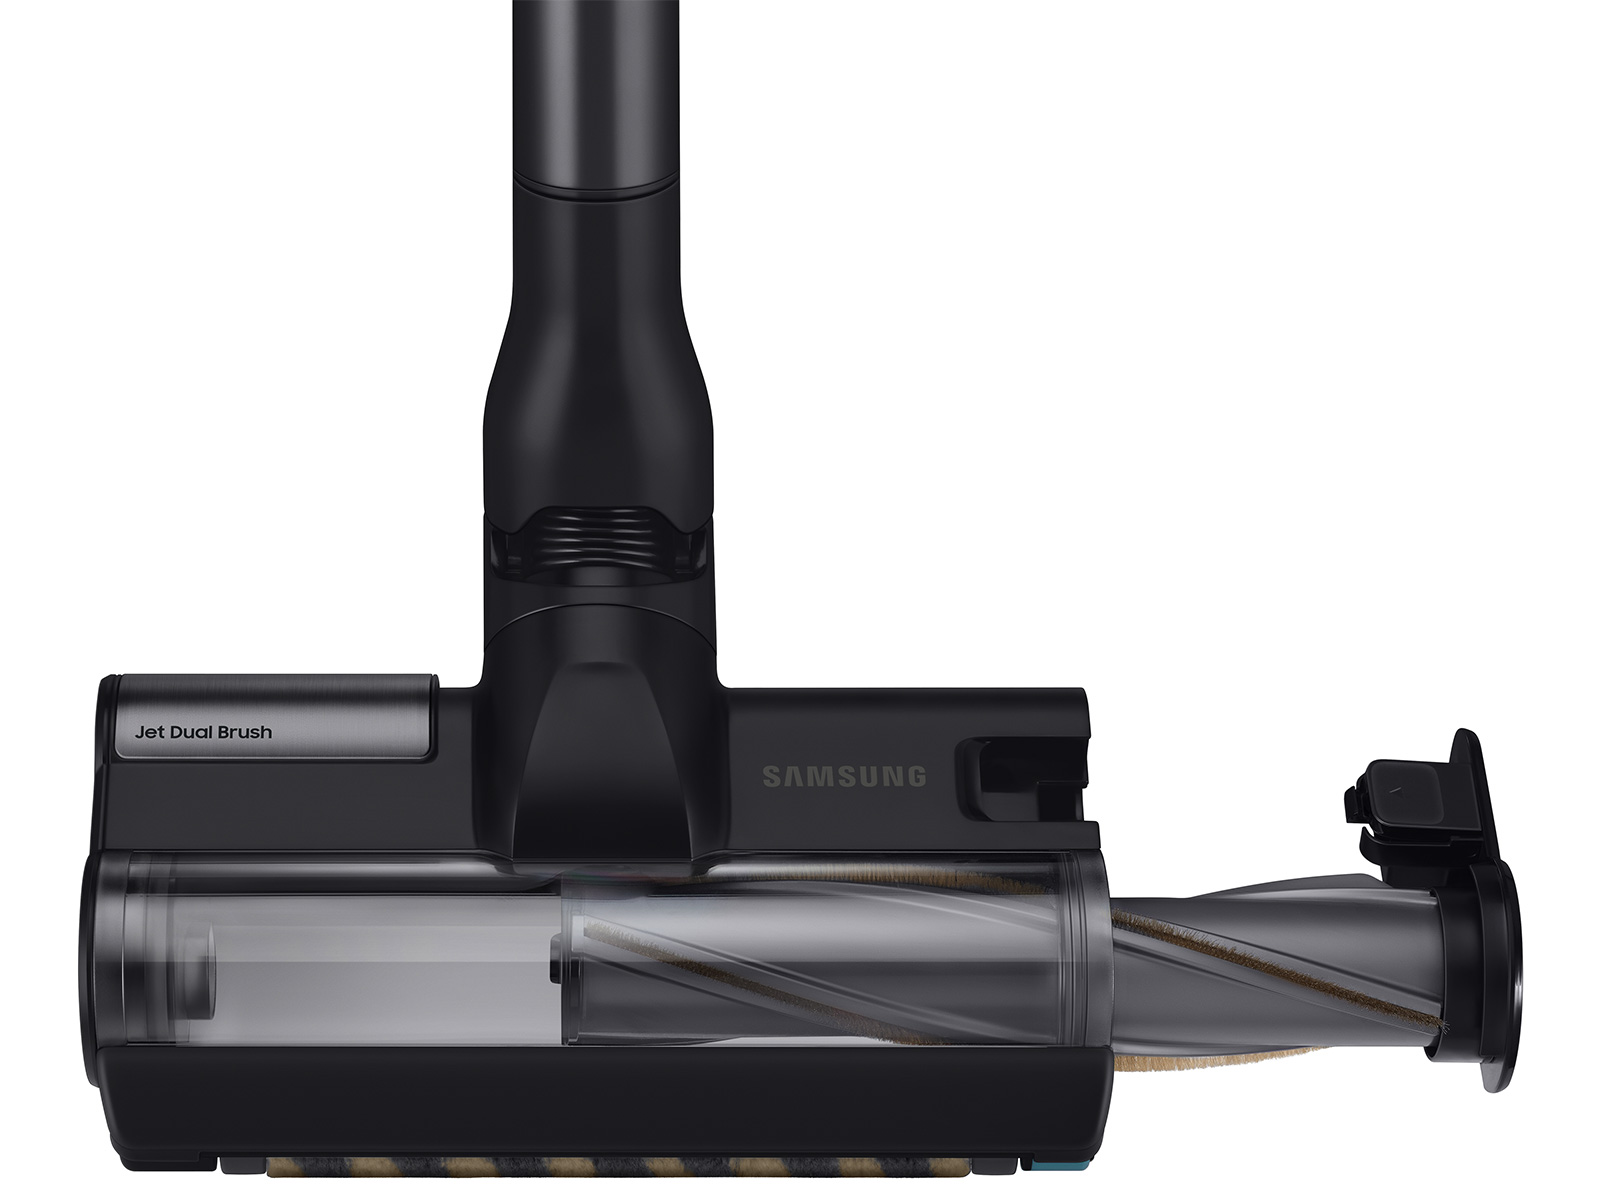 Samsung Aspirateur sans fil VS9500AL, Bespoke Jet One, Complete